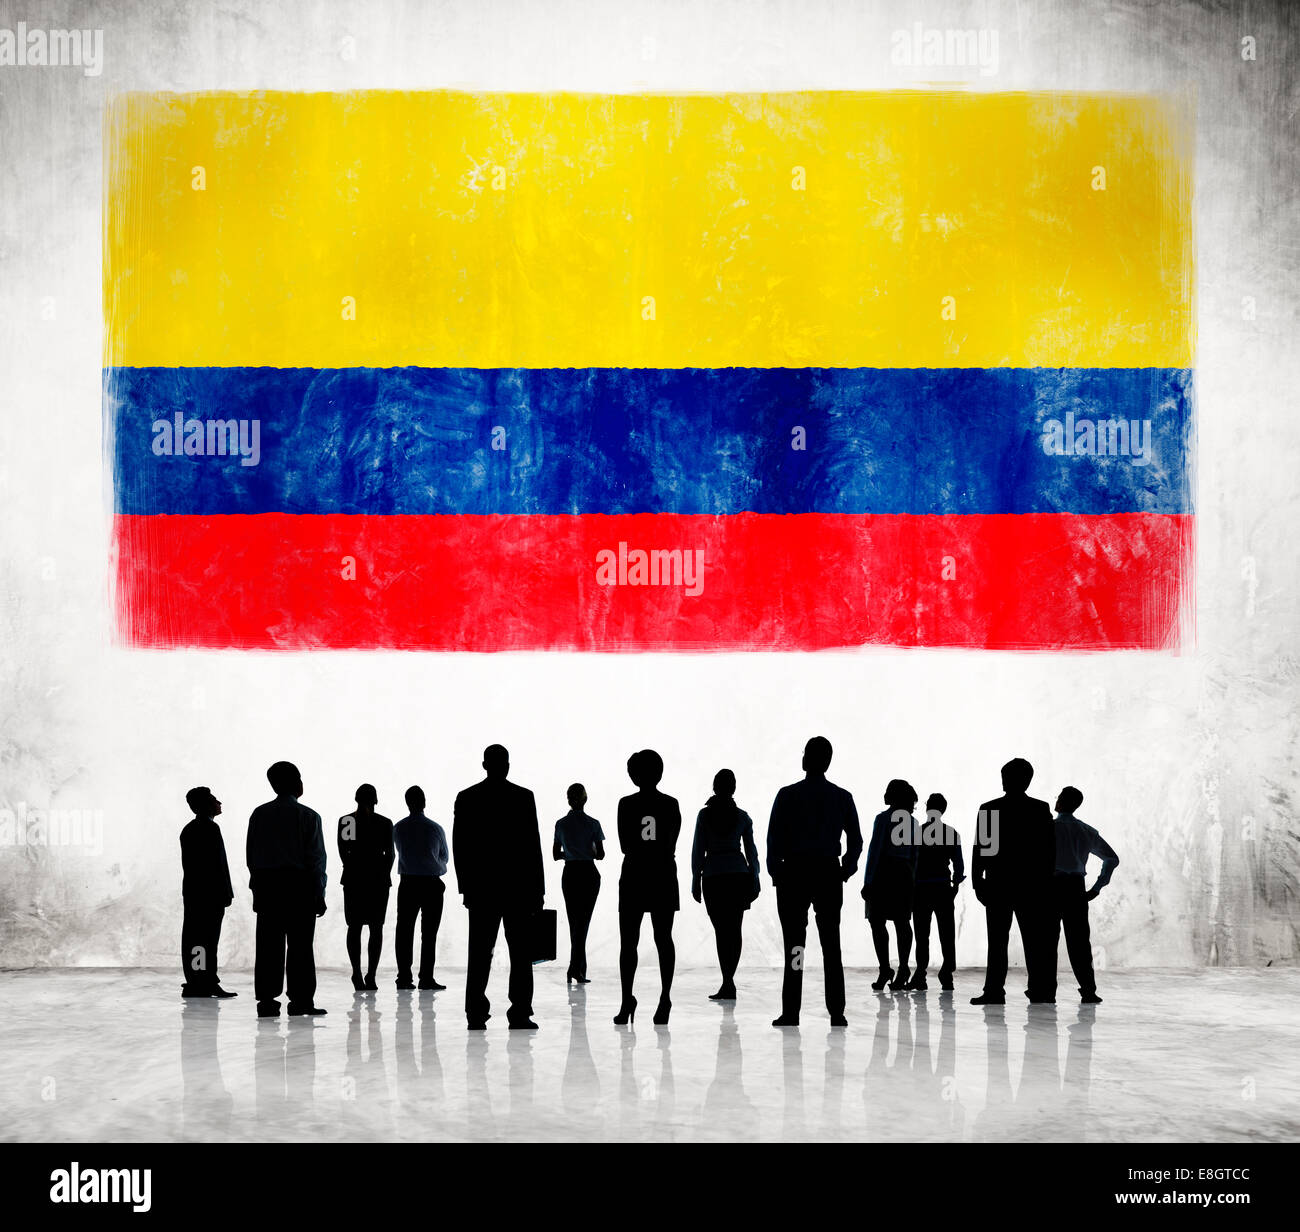 Silhouettes d'hommes d'affaires et d'un drapeau de la Colombie Banque D'Images